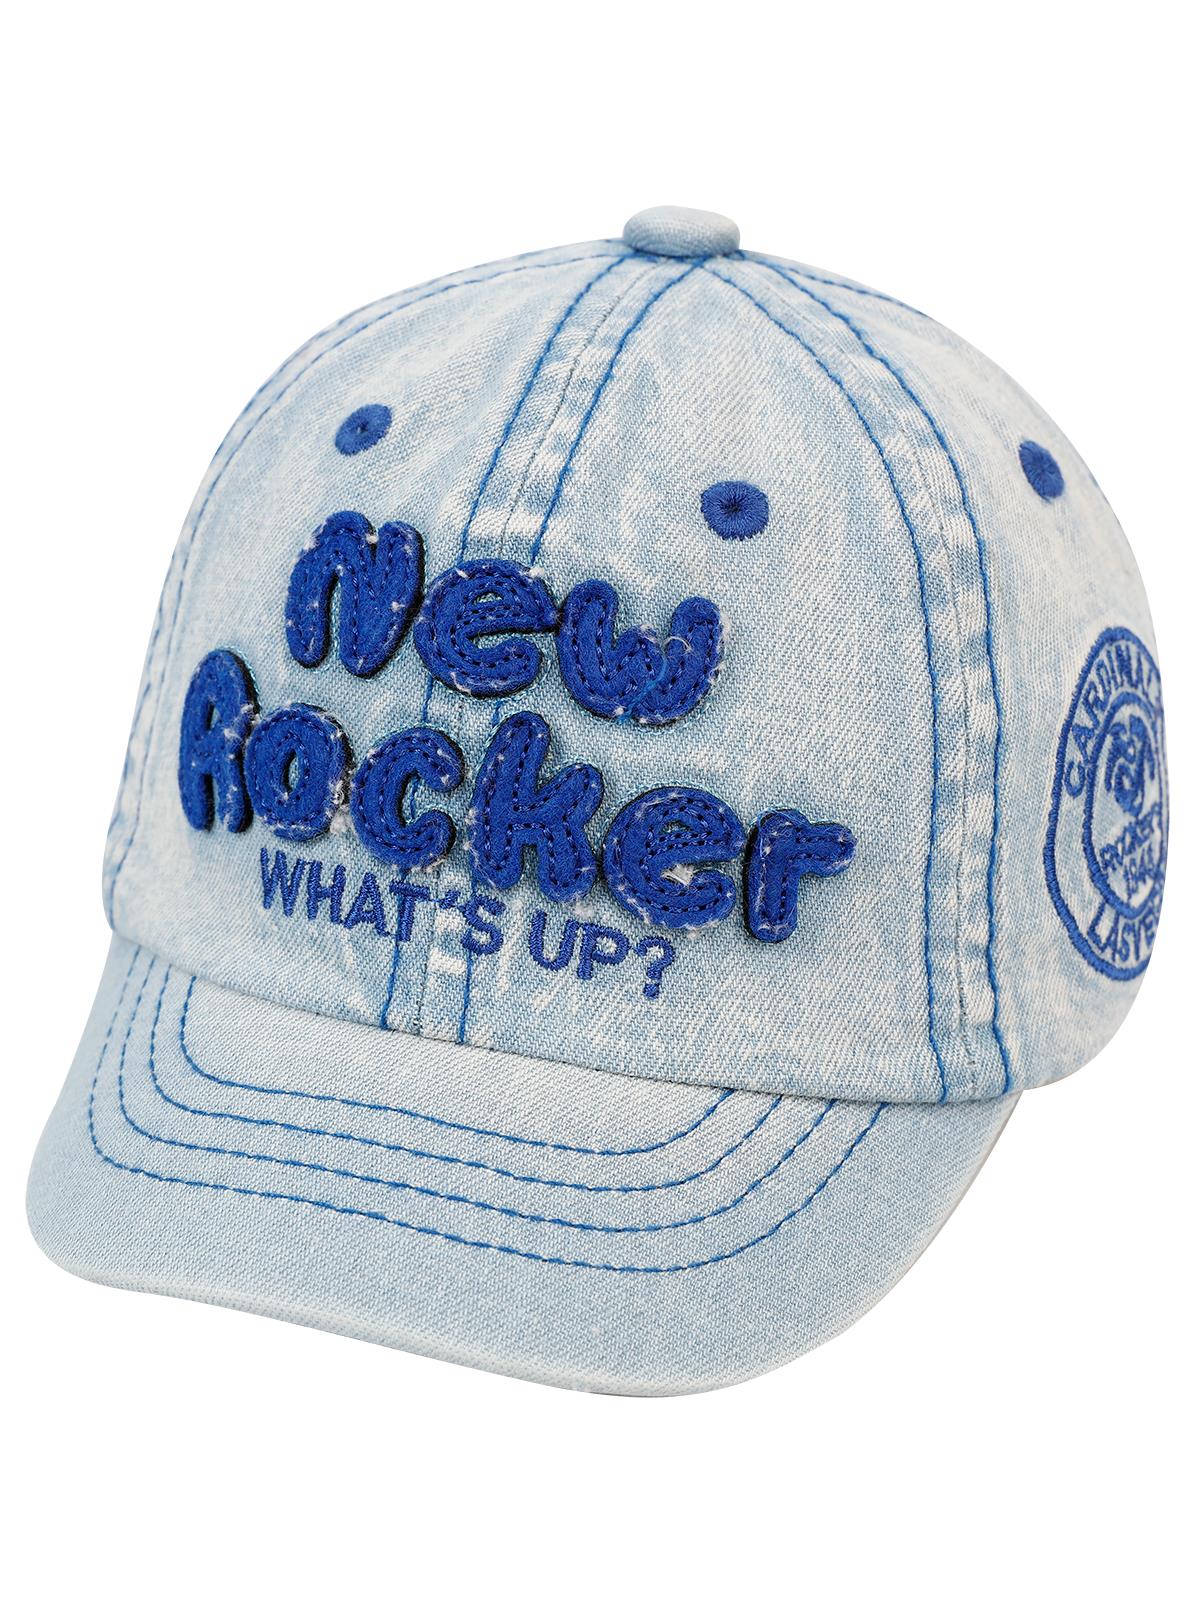 Kitti Erkek Çocuk Kep Şapka 1-4 Yaş Açık Mavi